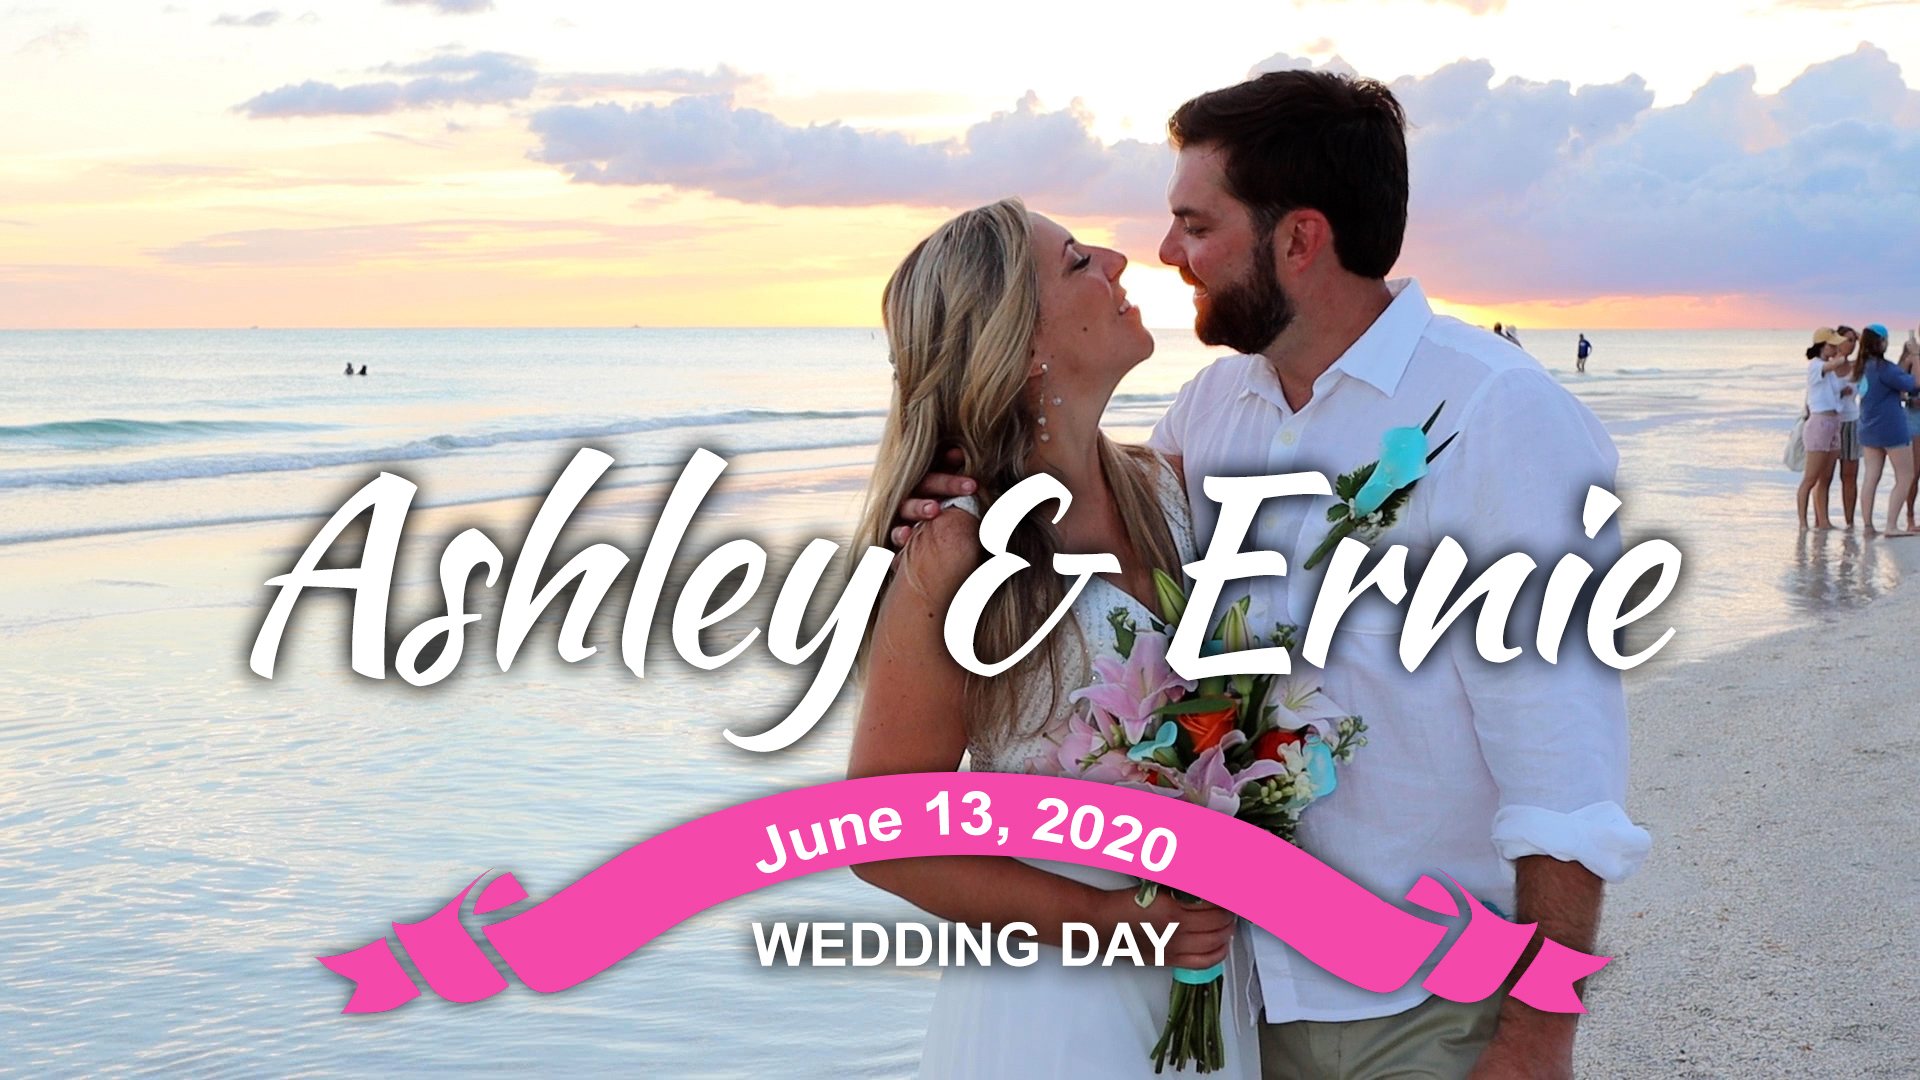 Ashley & Ernie Wedding – Trailer